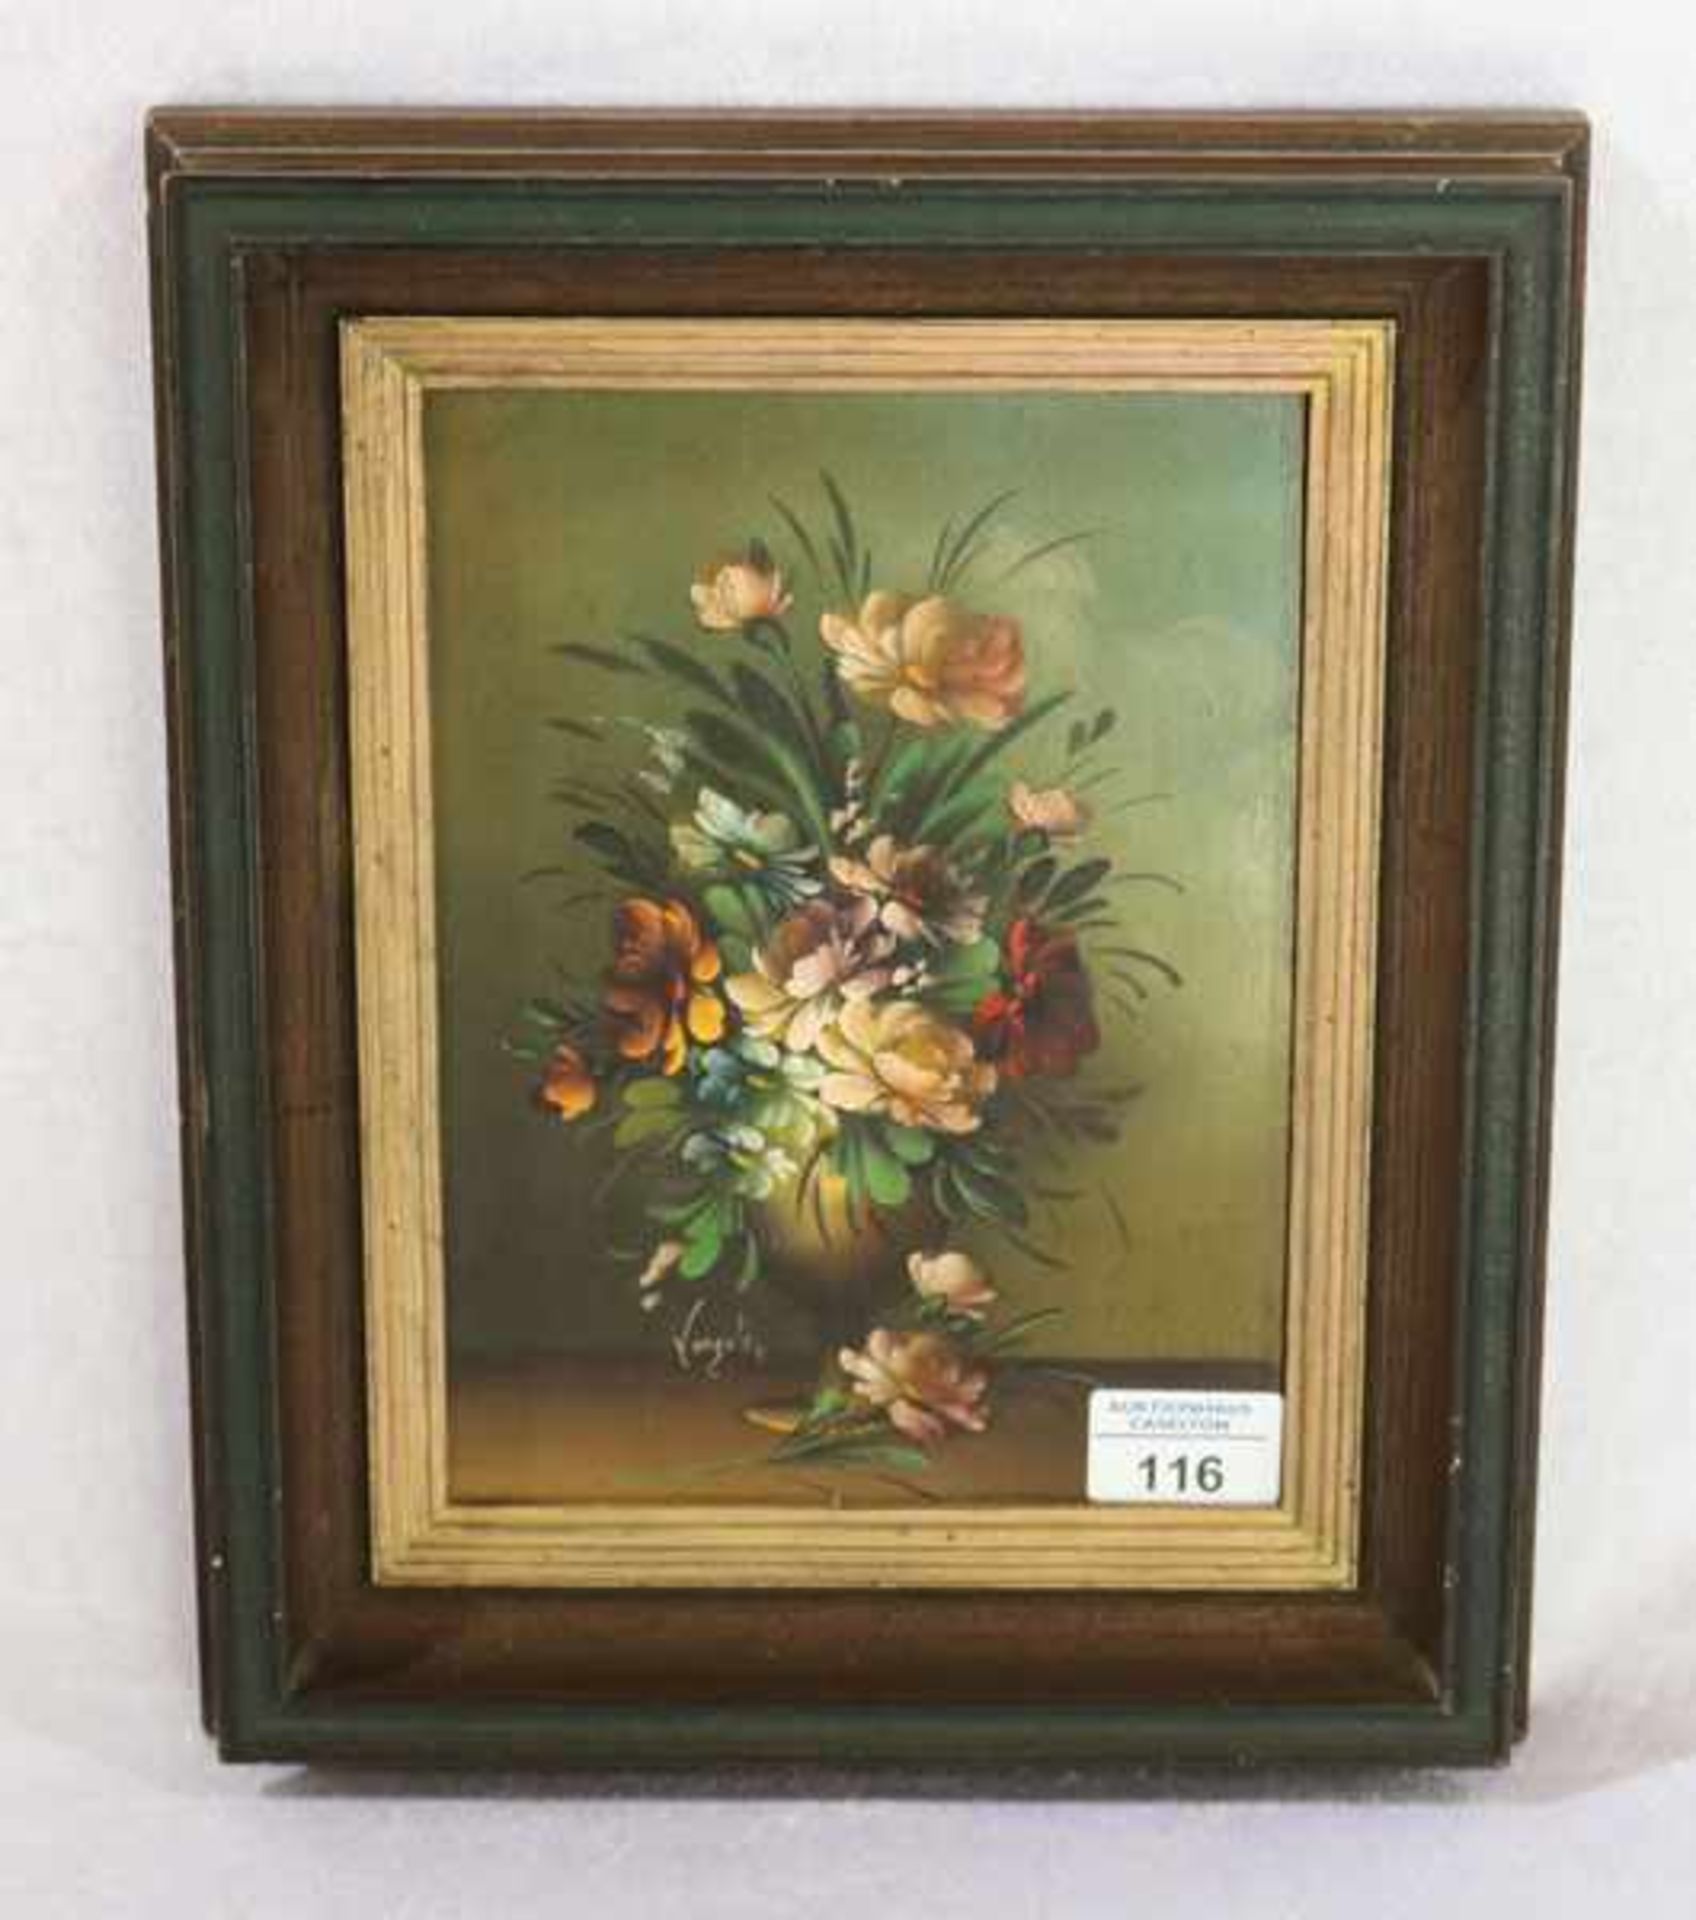 Gemälde ÖL/Malkarton 'Blumen in Vase', signiert Verzola ?, gerahmt, Rahmen leicht bestossen, incl.